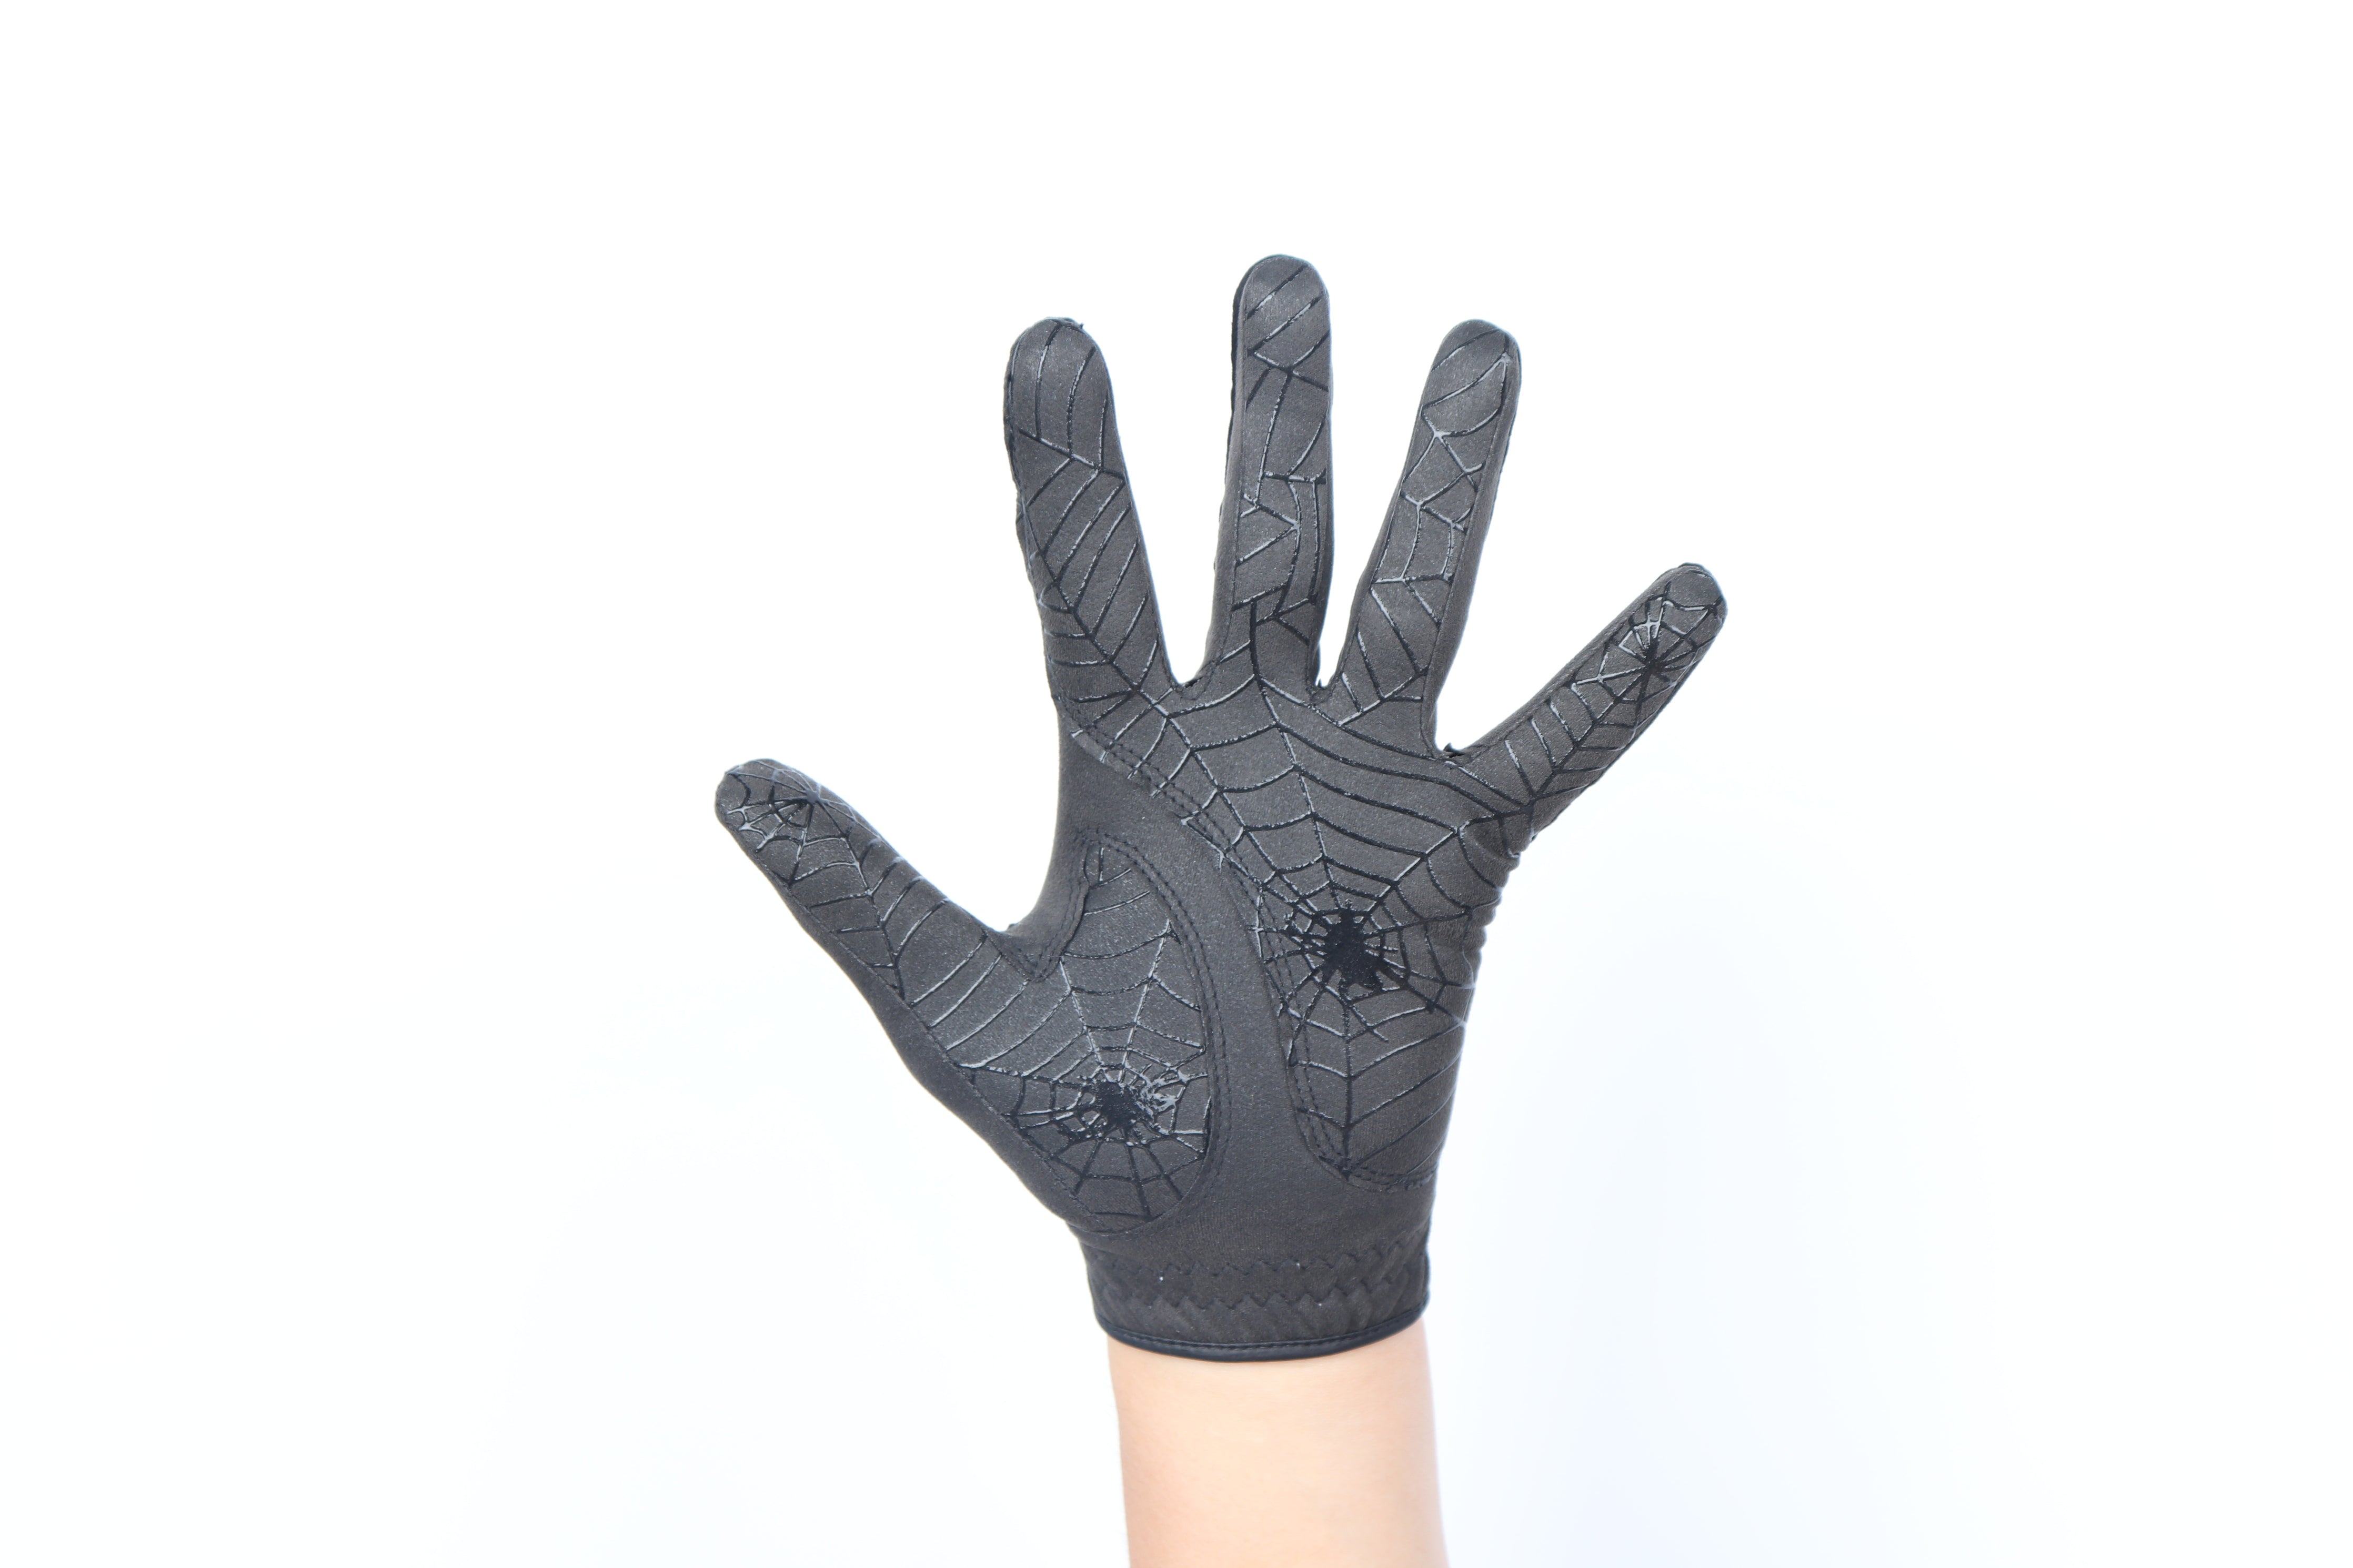 GOuft Spiderweb Golf Glove Black Edition - All Black